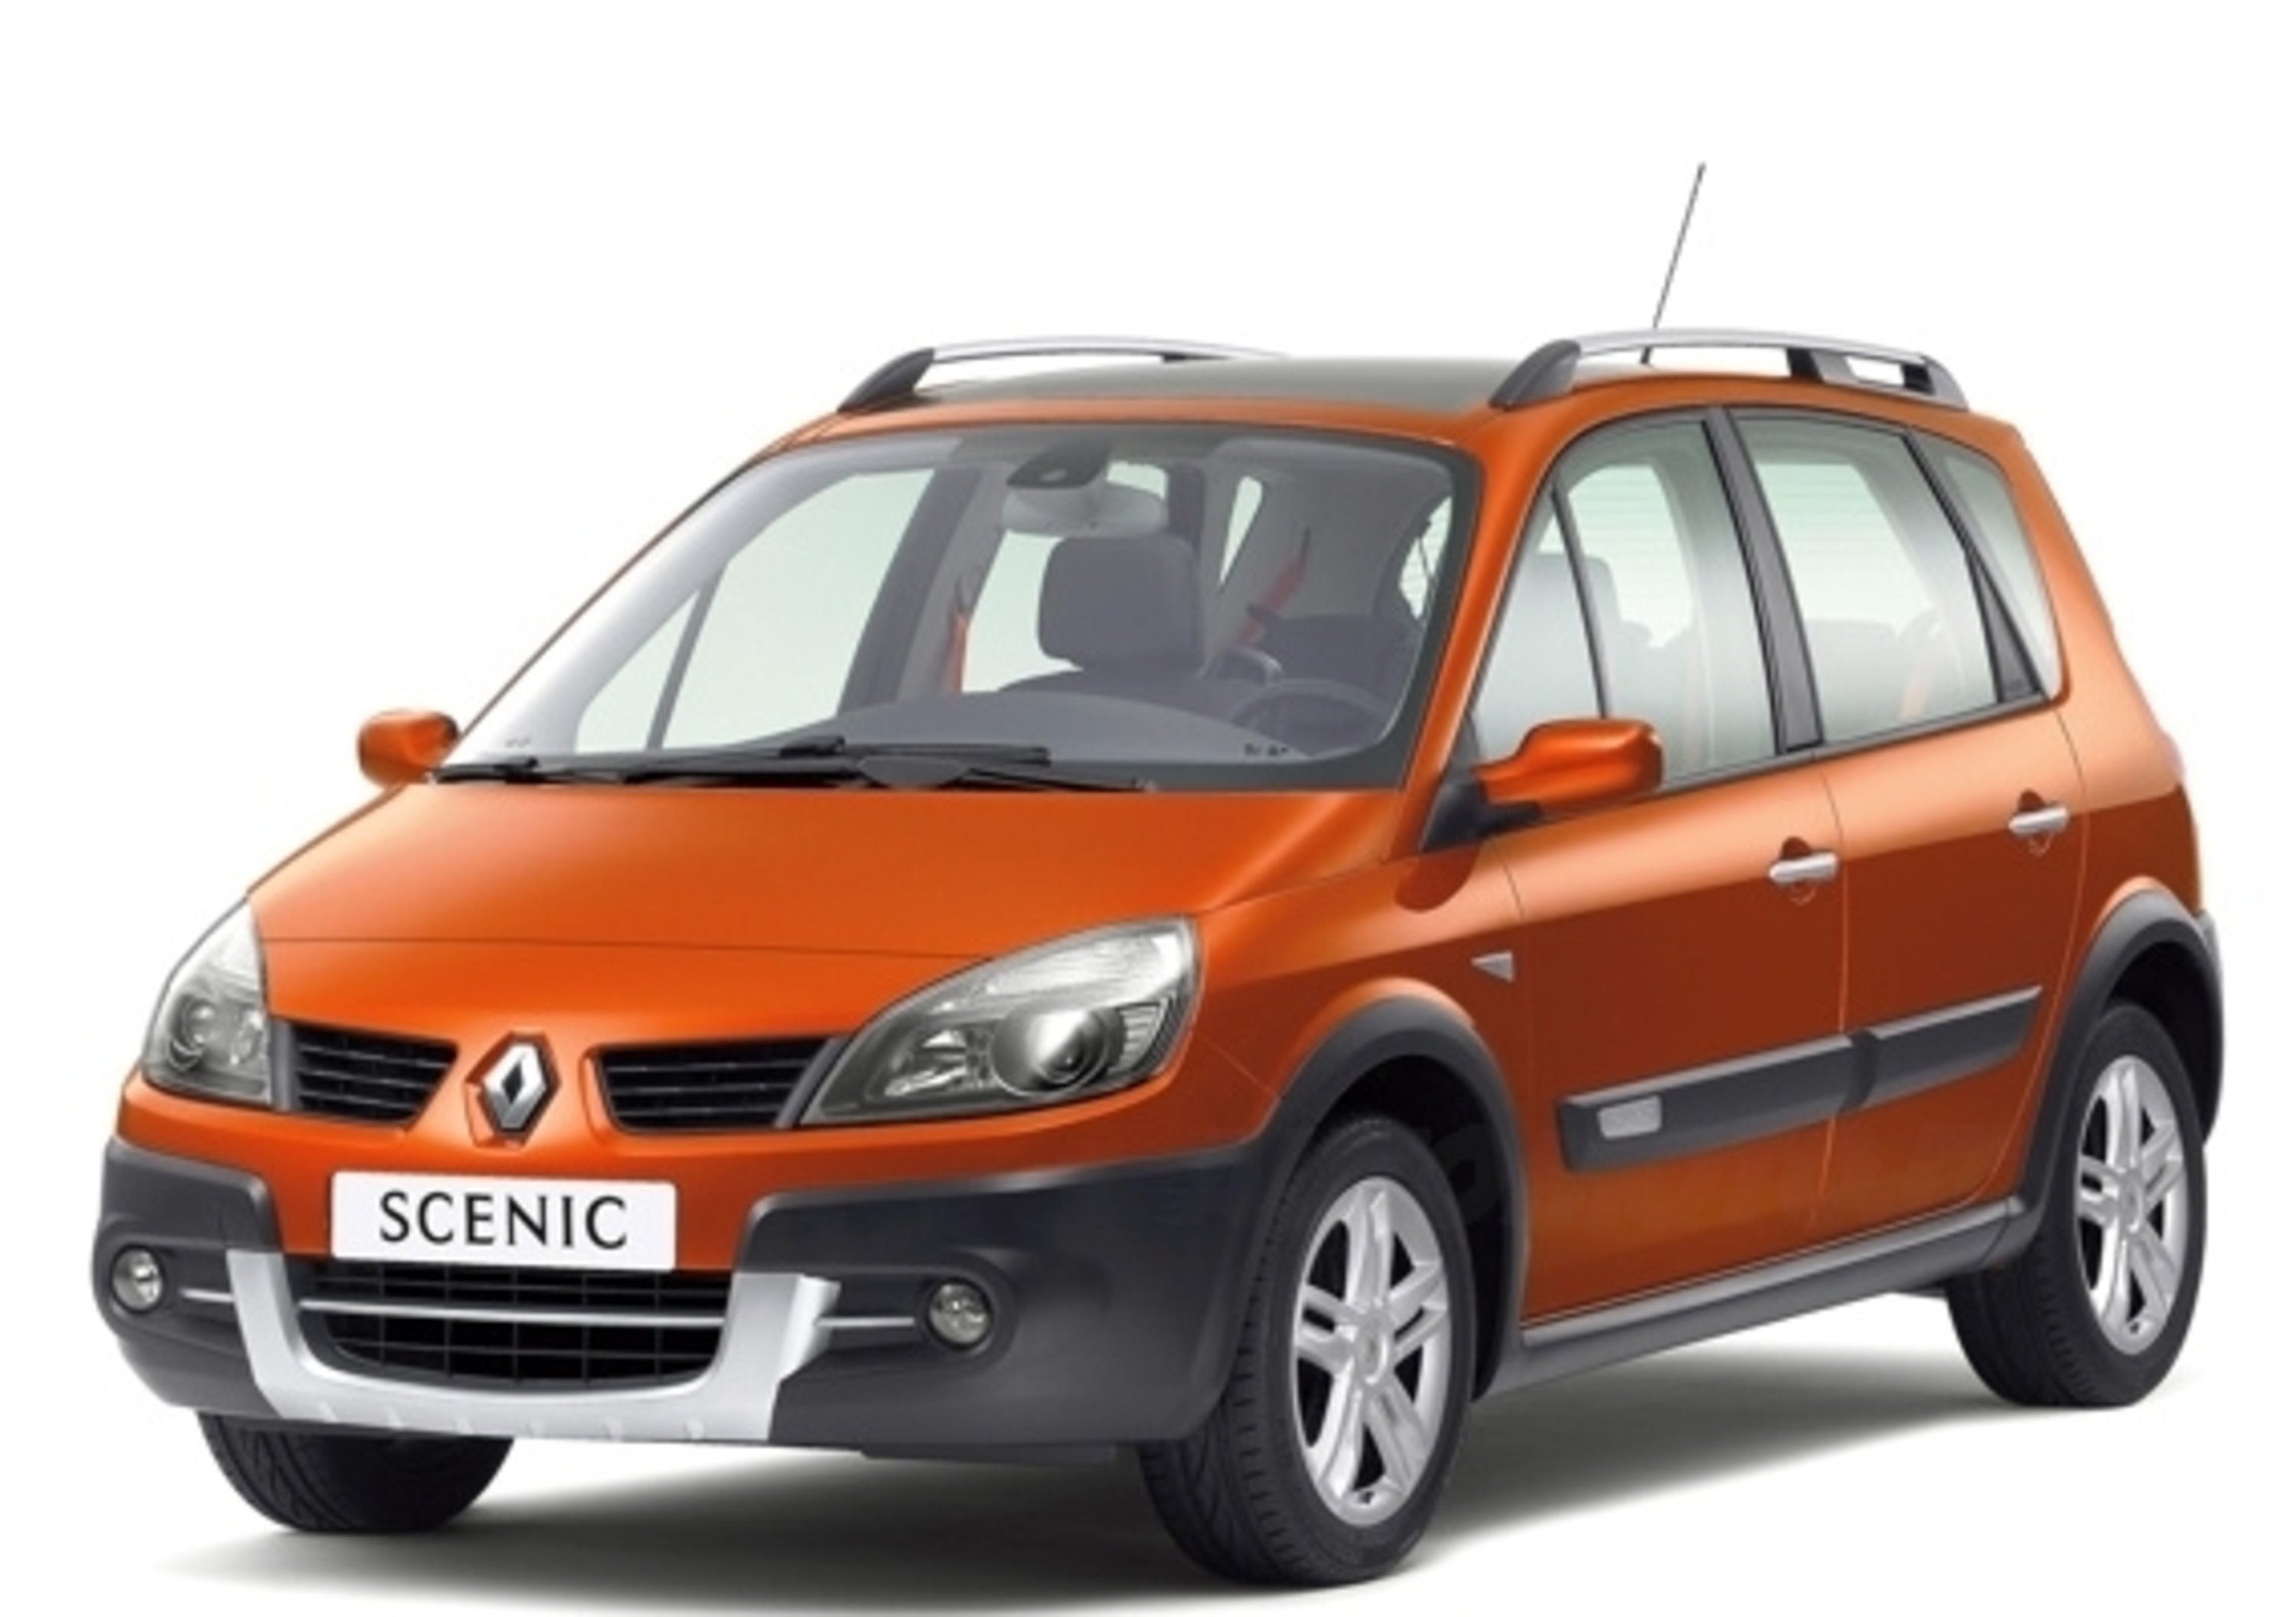 Renault Scenic Conquest